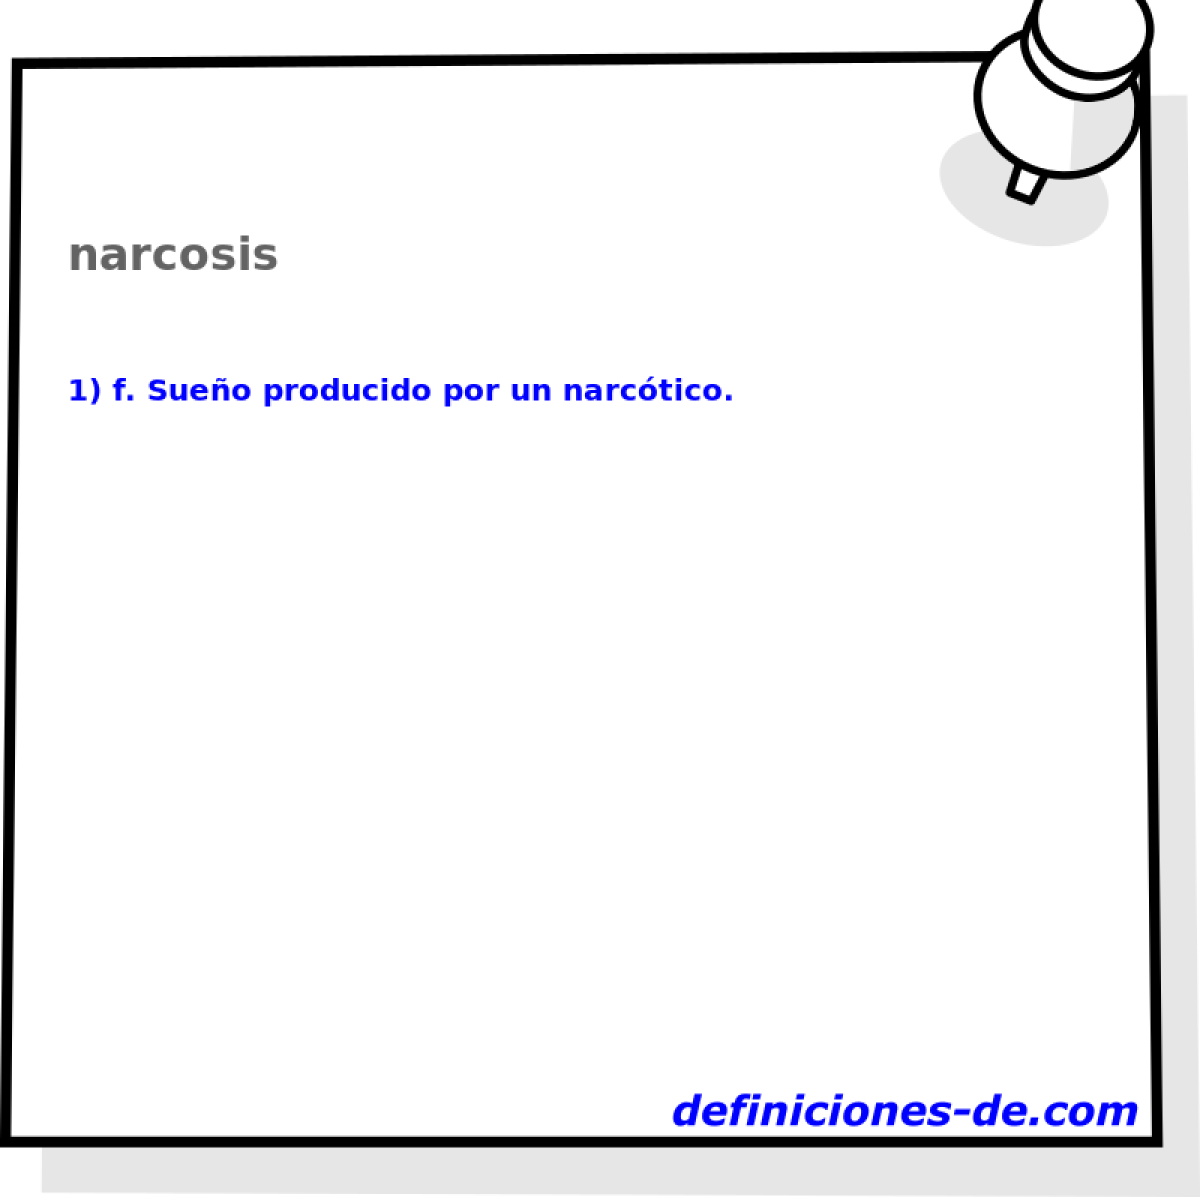 narcosis 